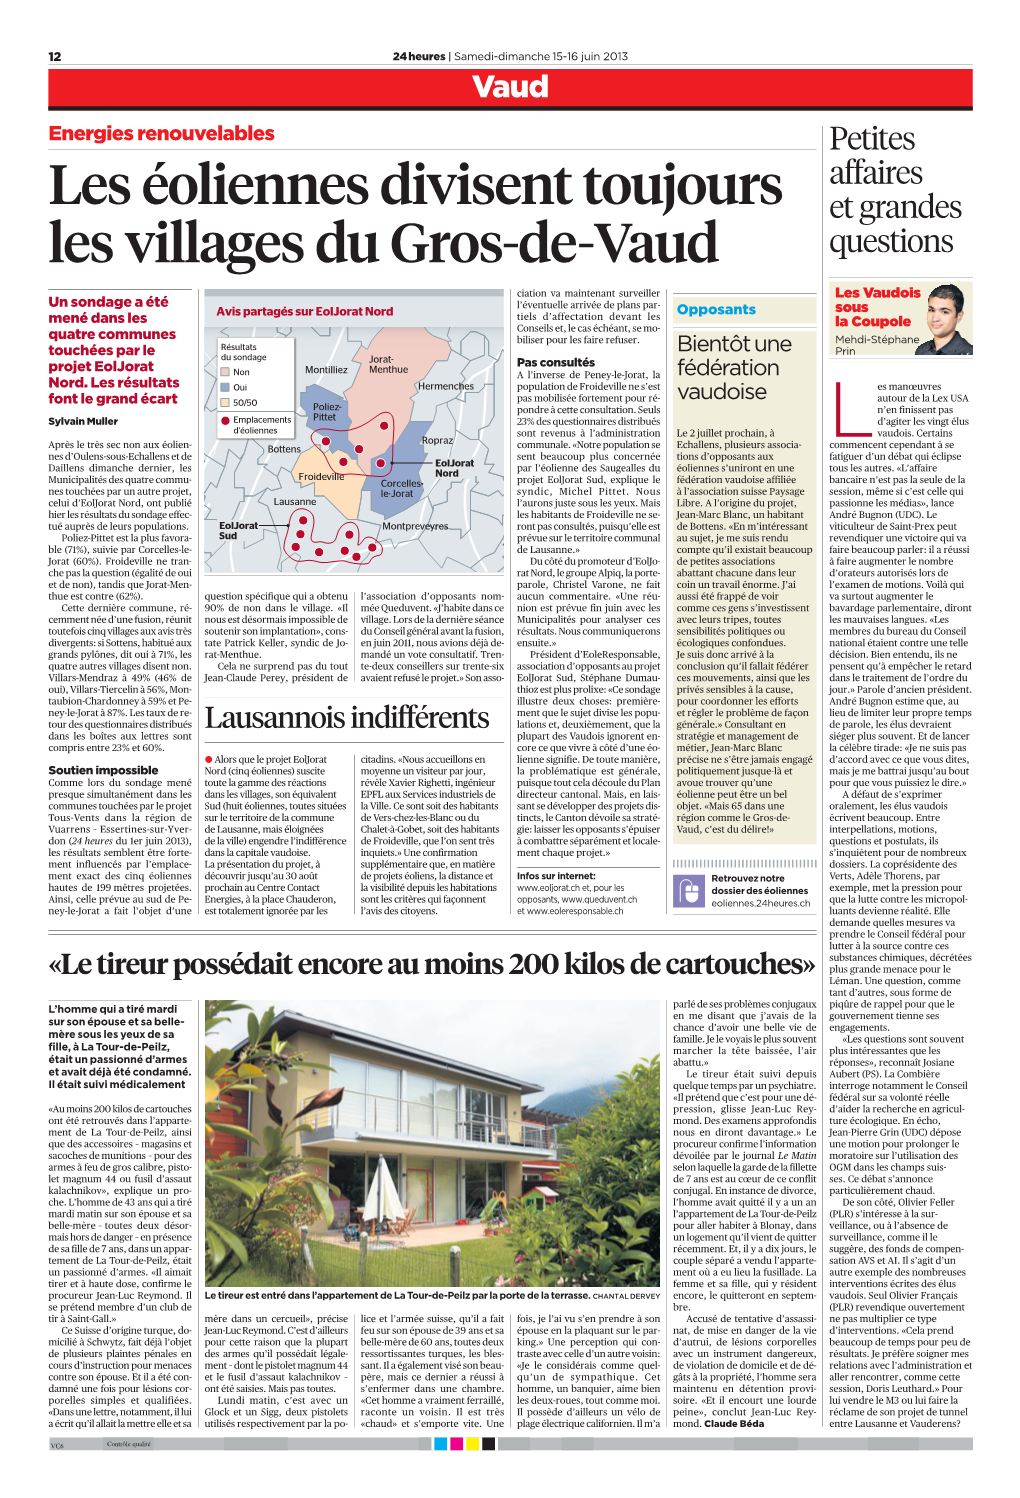 Les Éoliennes Divisent Toujours Les Villages Du Gros-De-Vaud